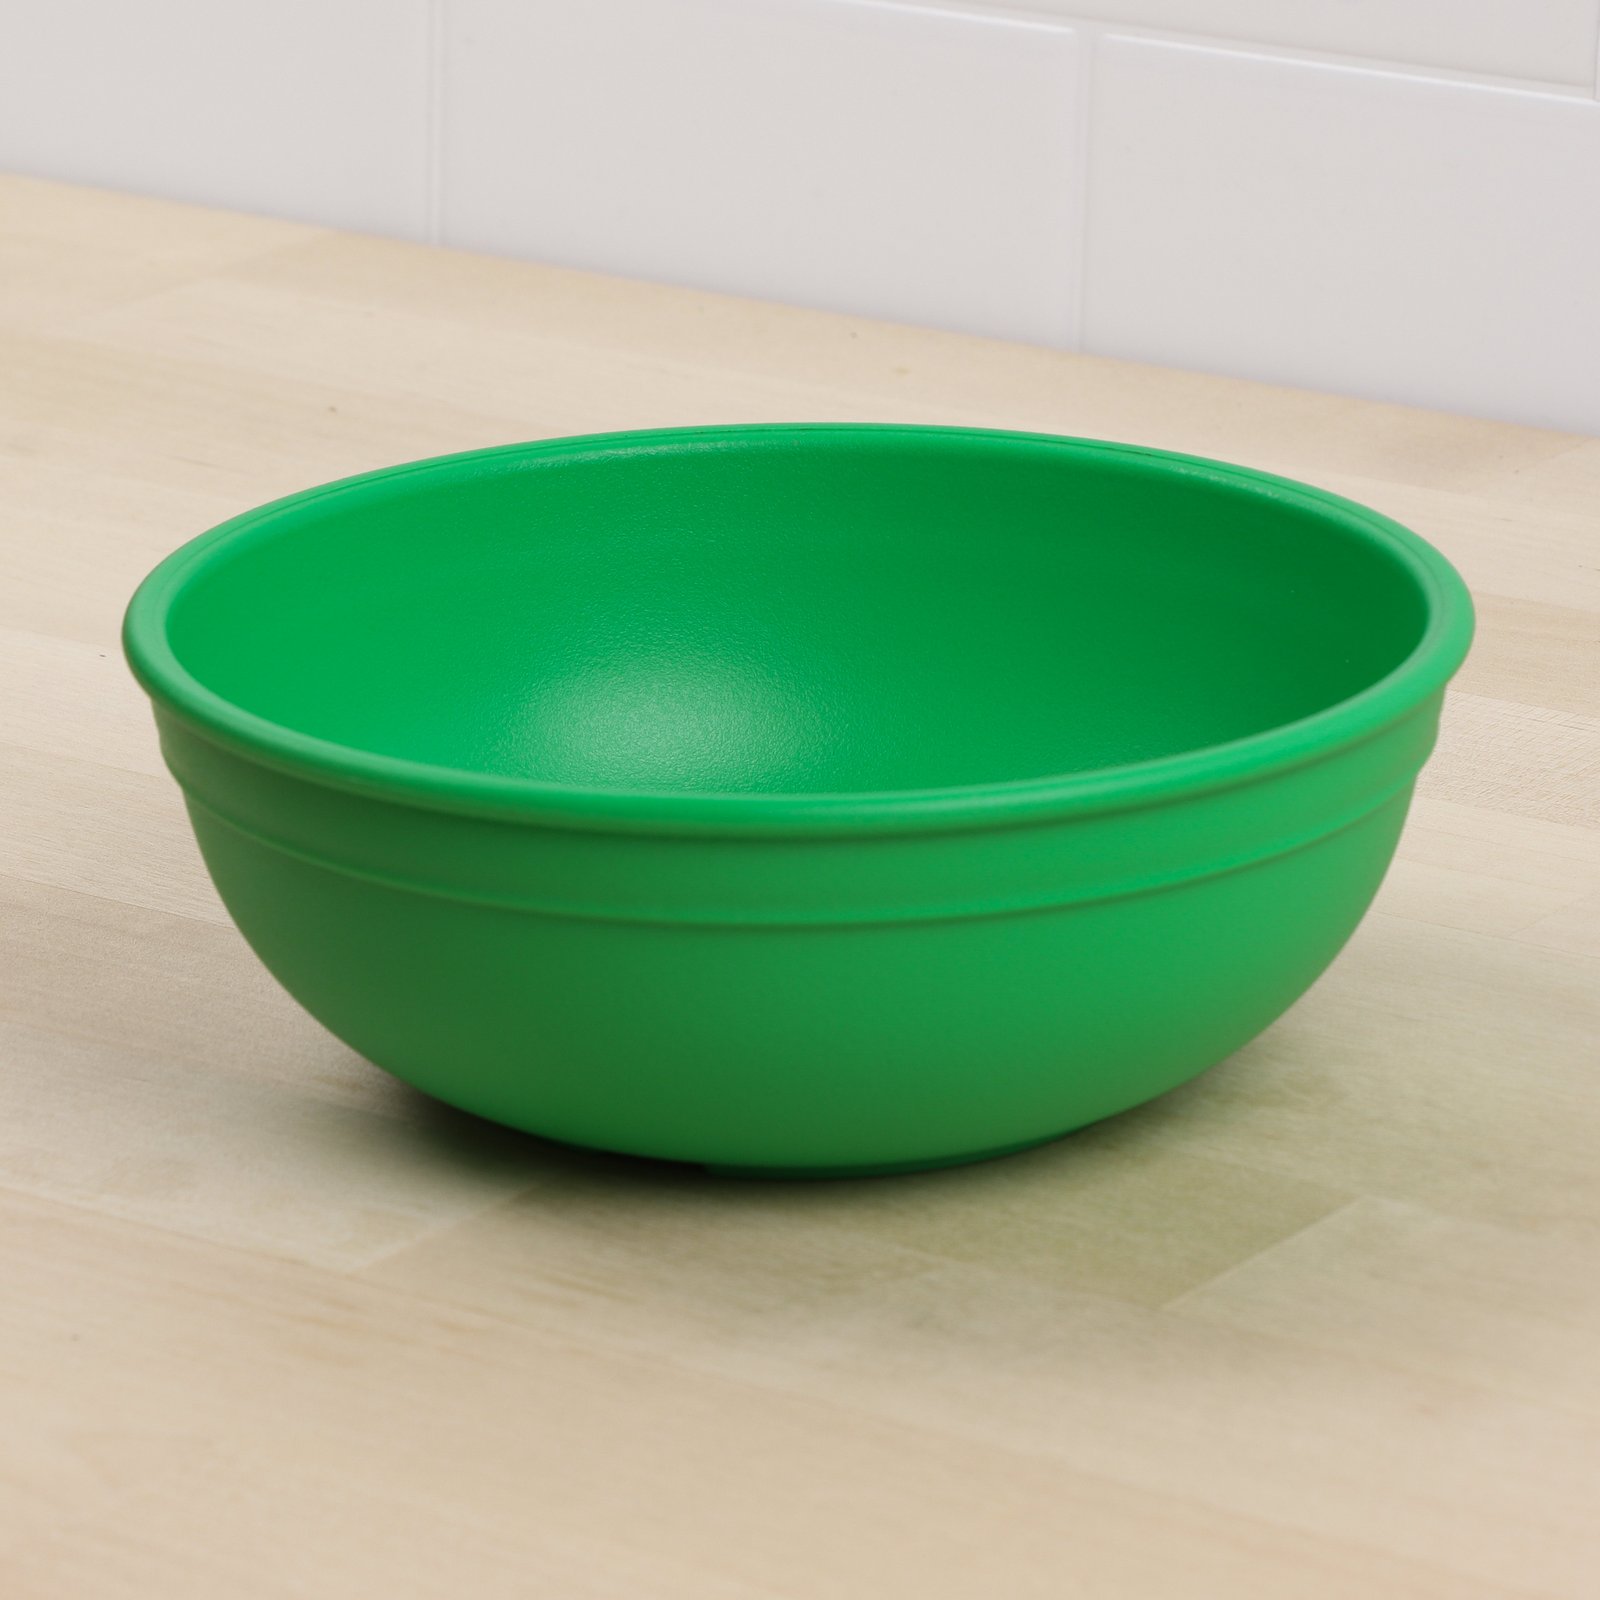 replay bowl grande verde